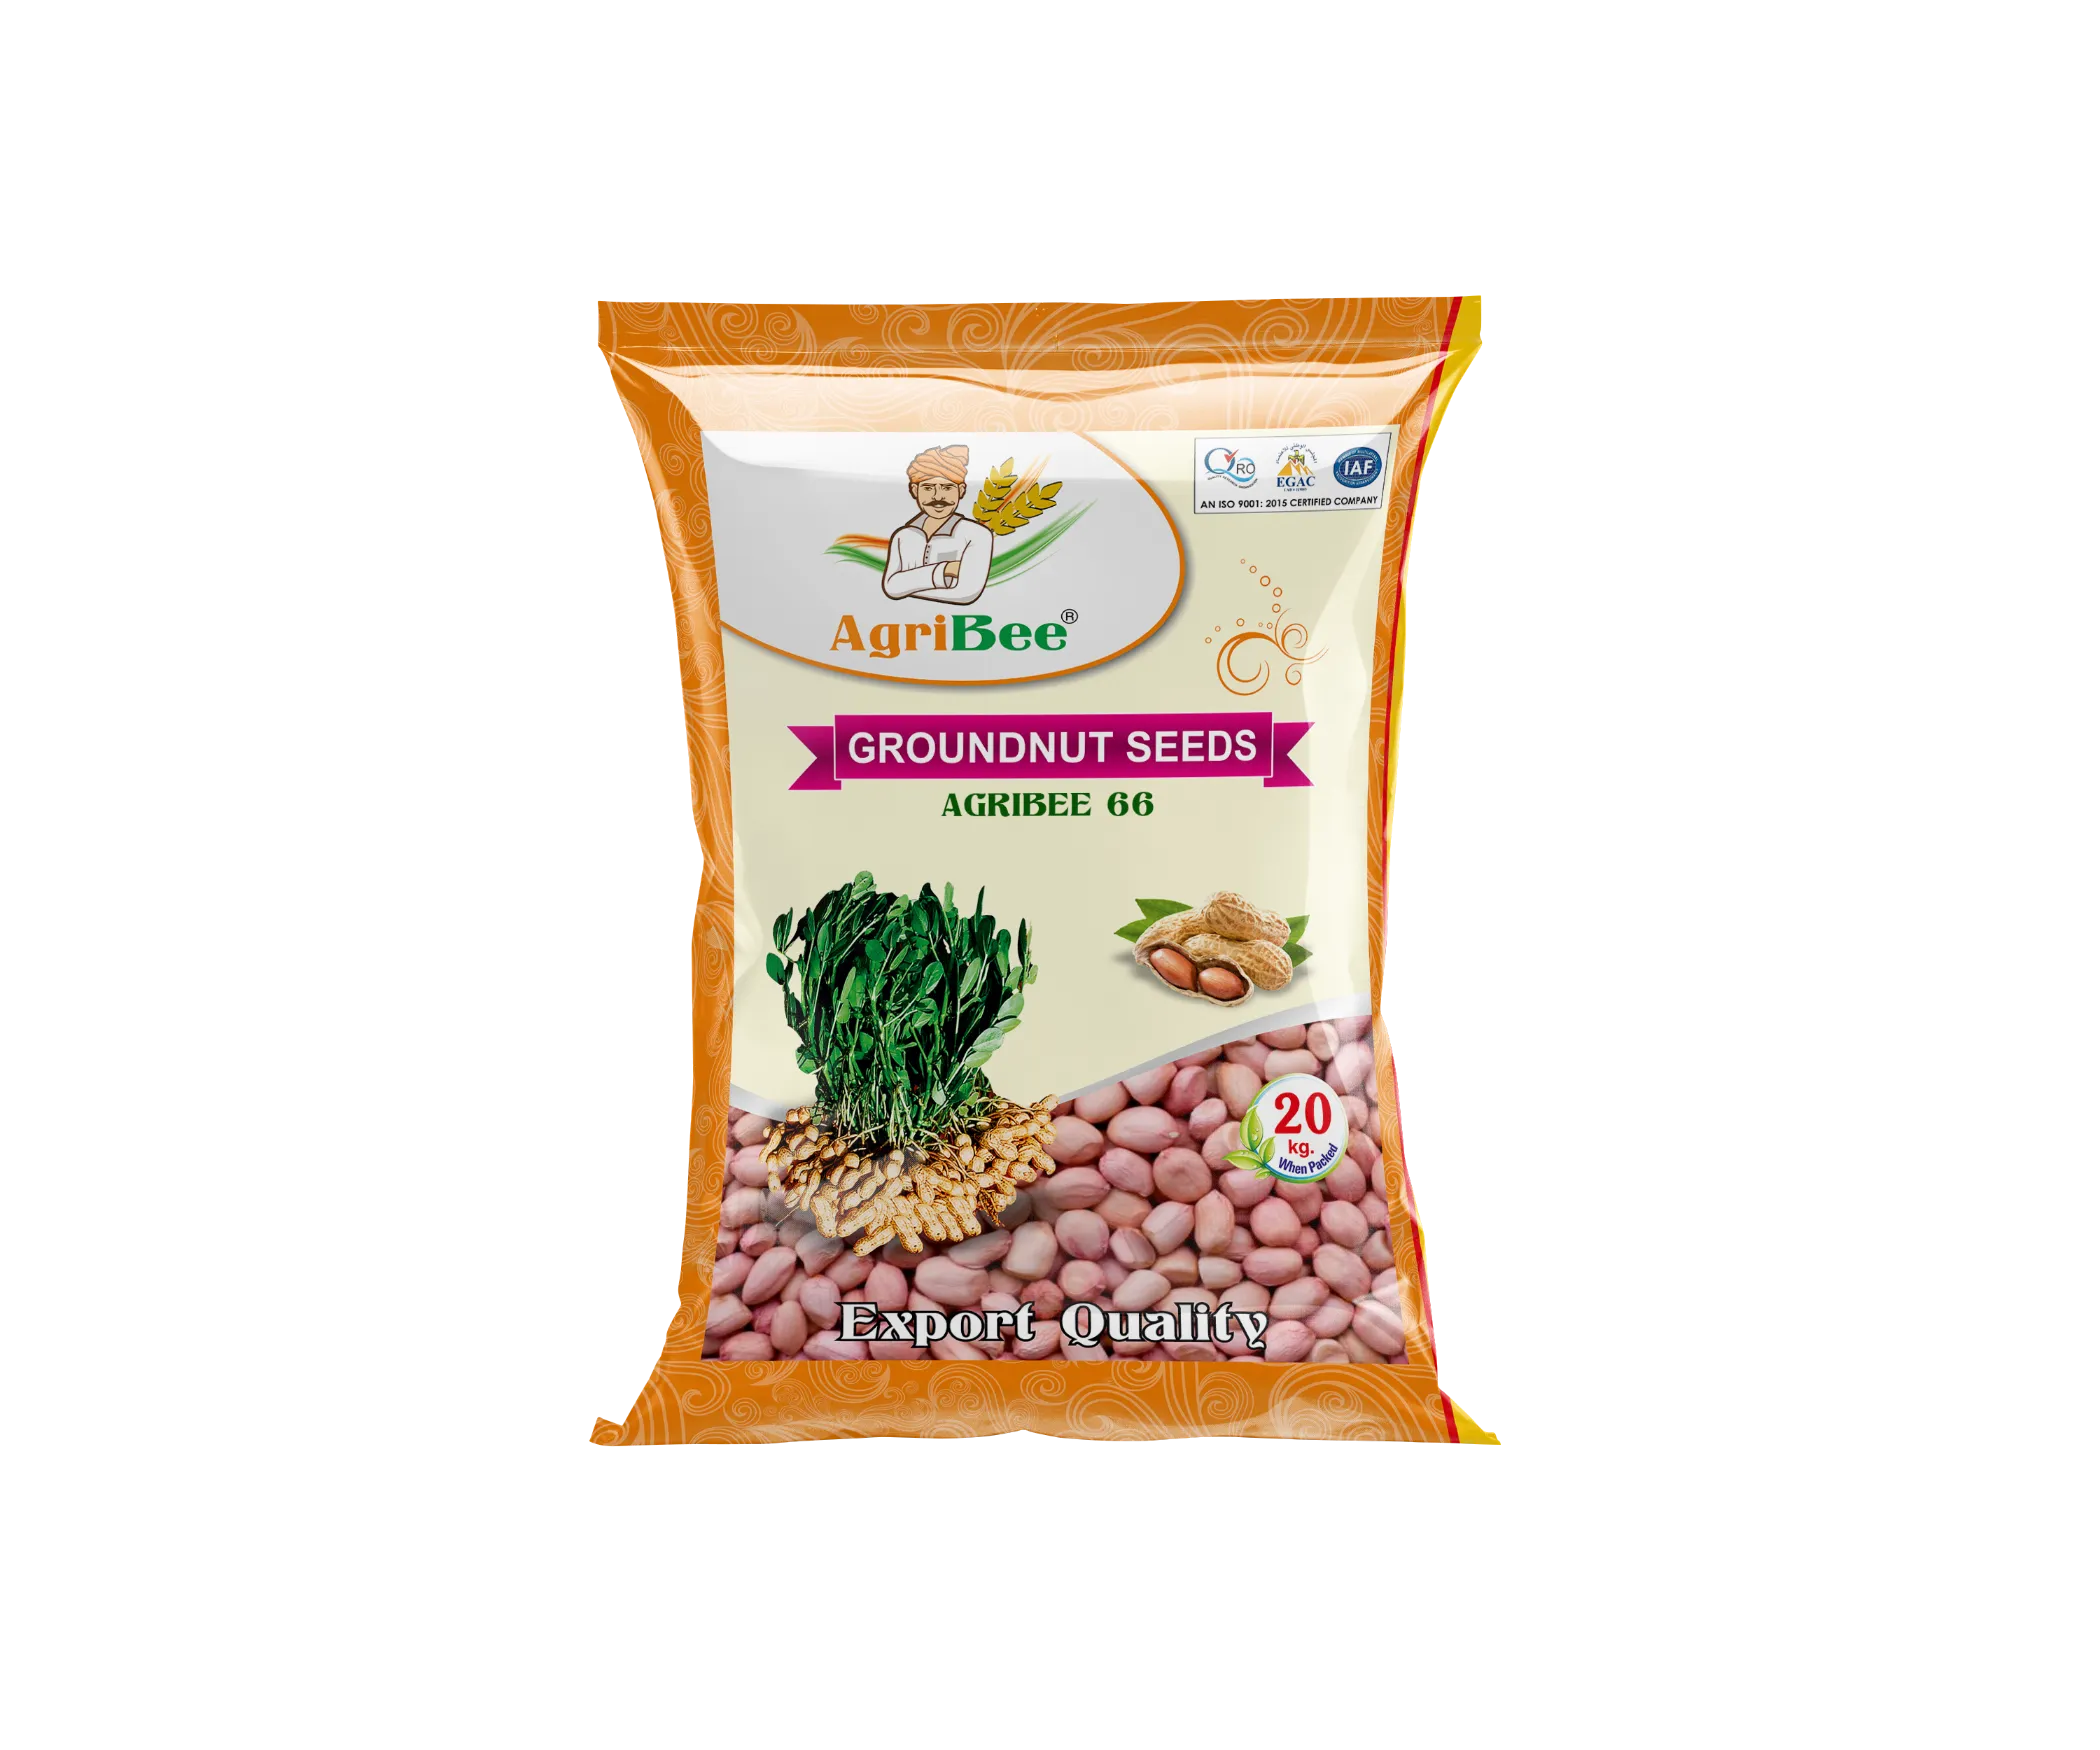 AgriBee Seeds Pvt Ltd